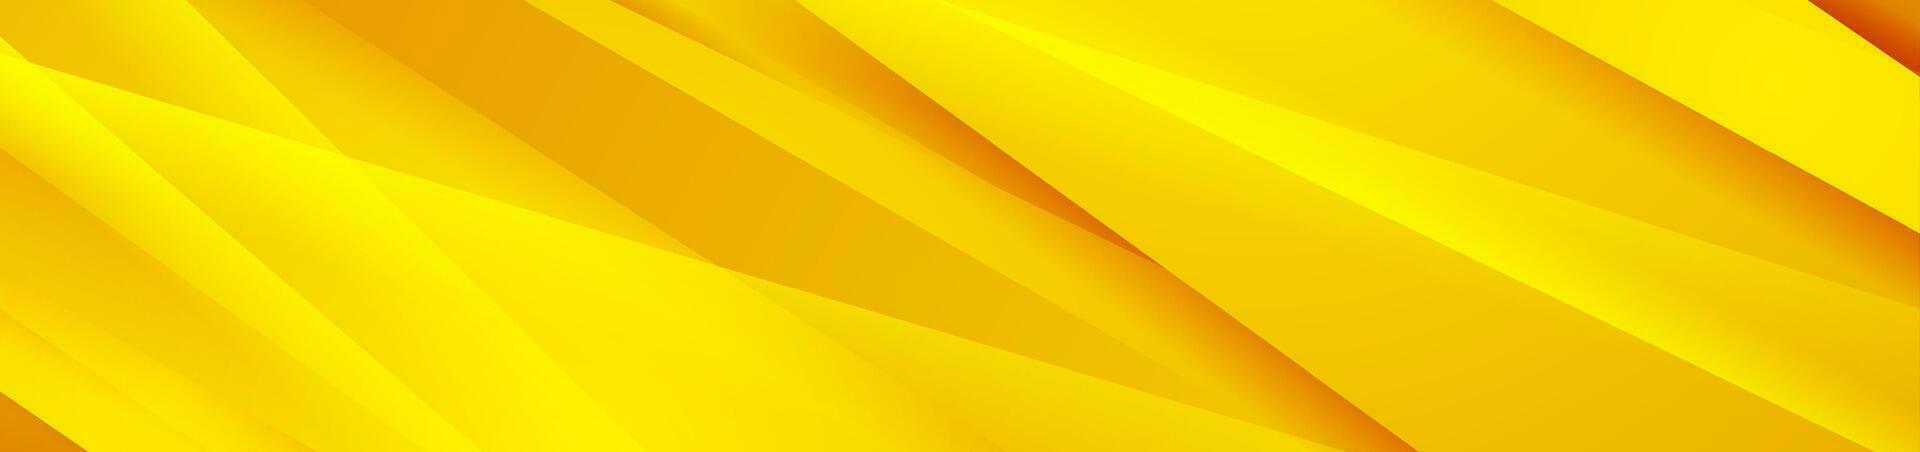 ljus gul glansig Ränder abstrakt bakgrund vektor